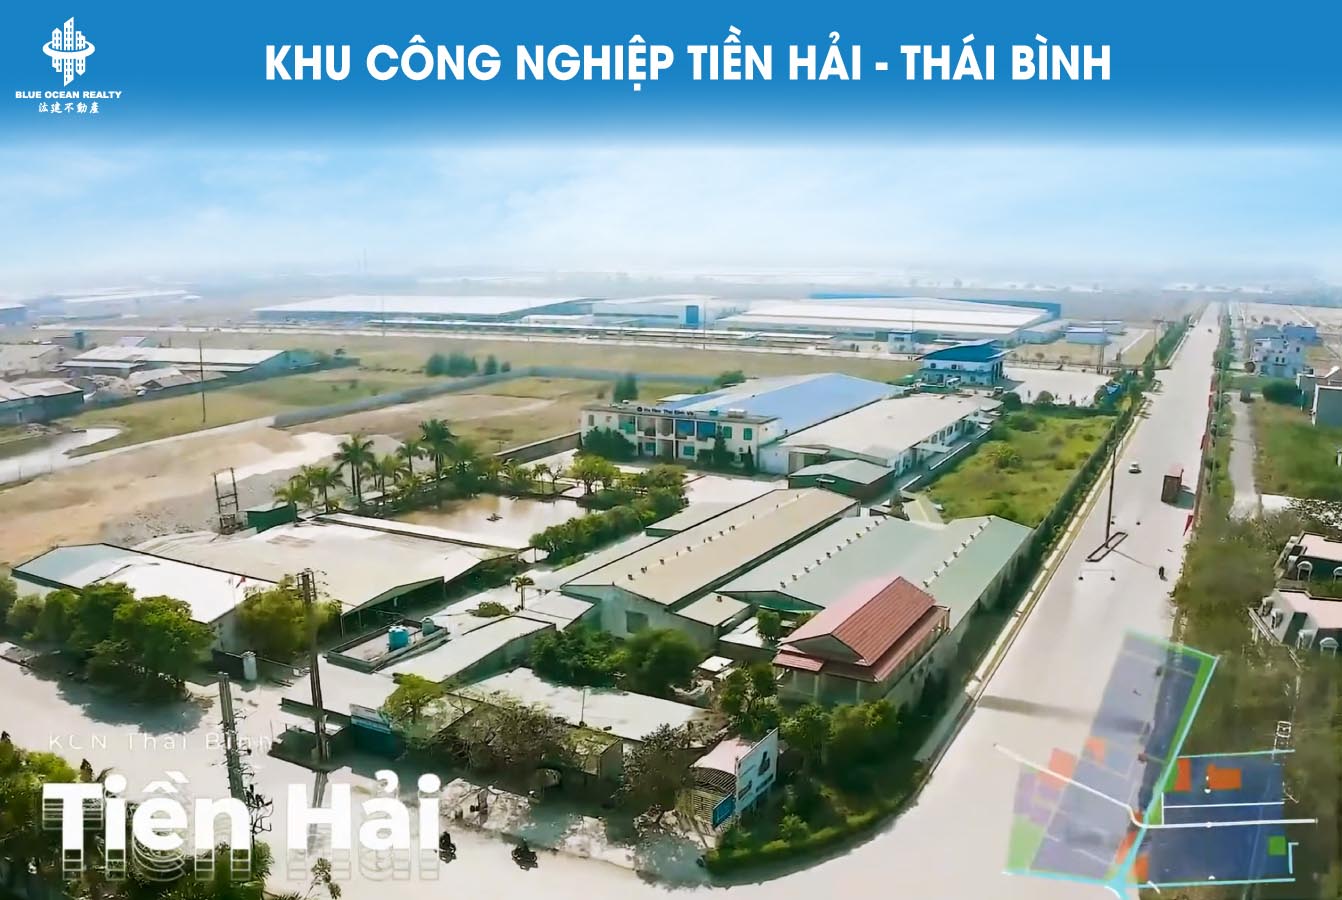 Khu công nghiệp (KCN) Tiền Hải - Thái Bình